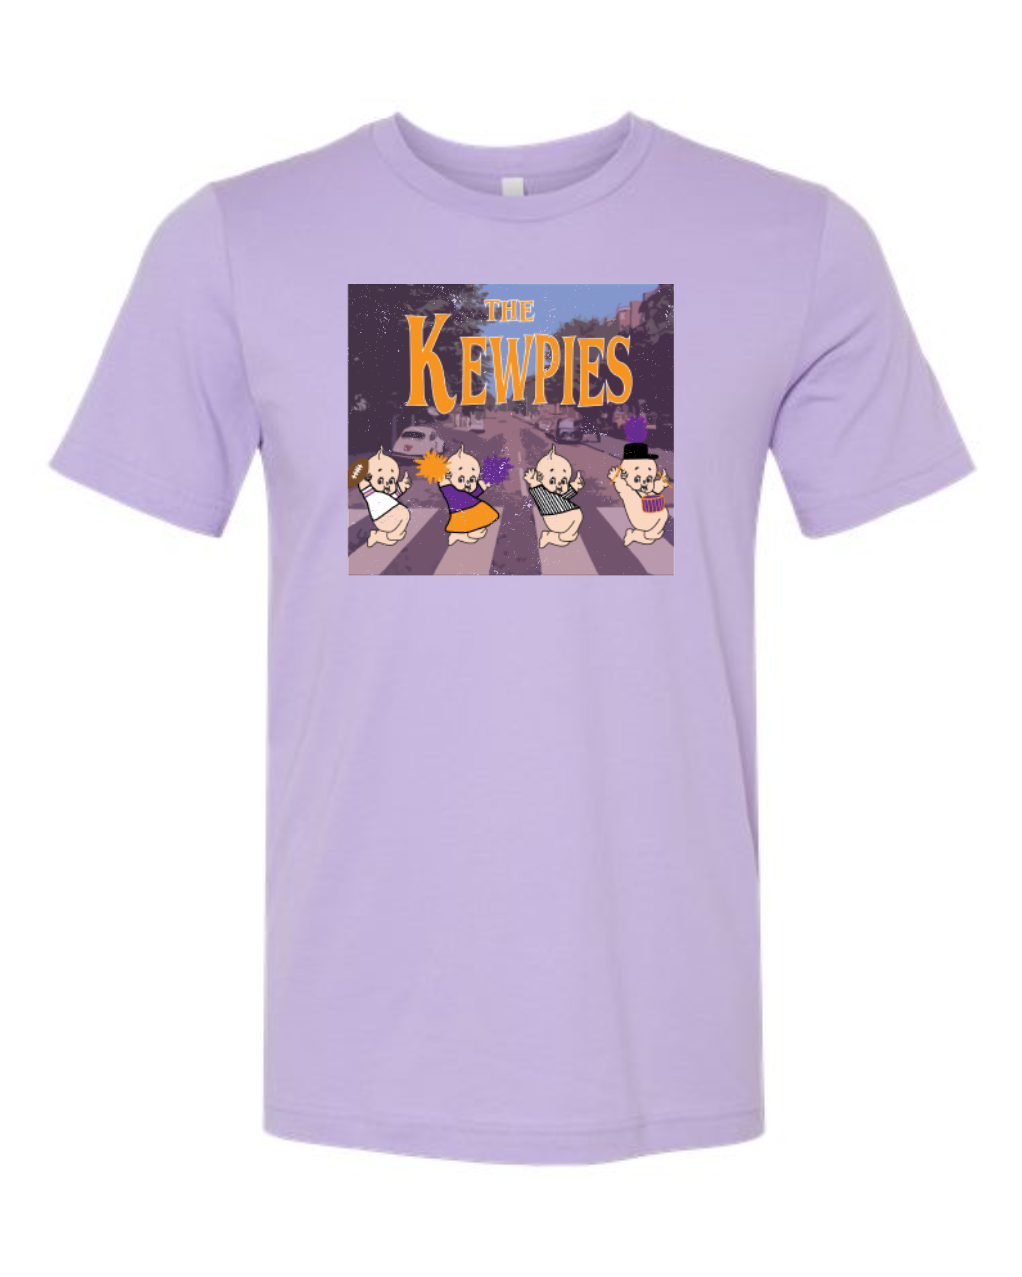 The Kewpies